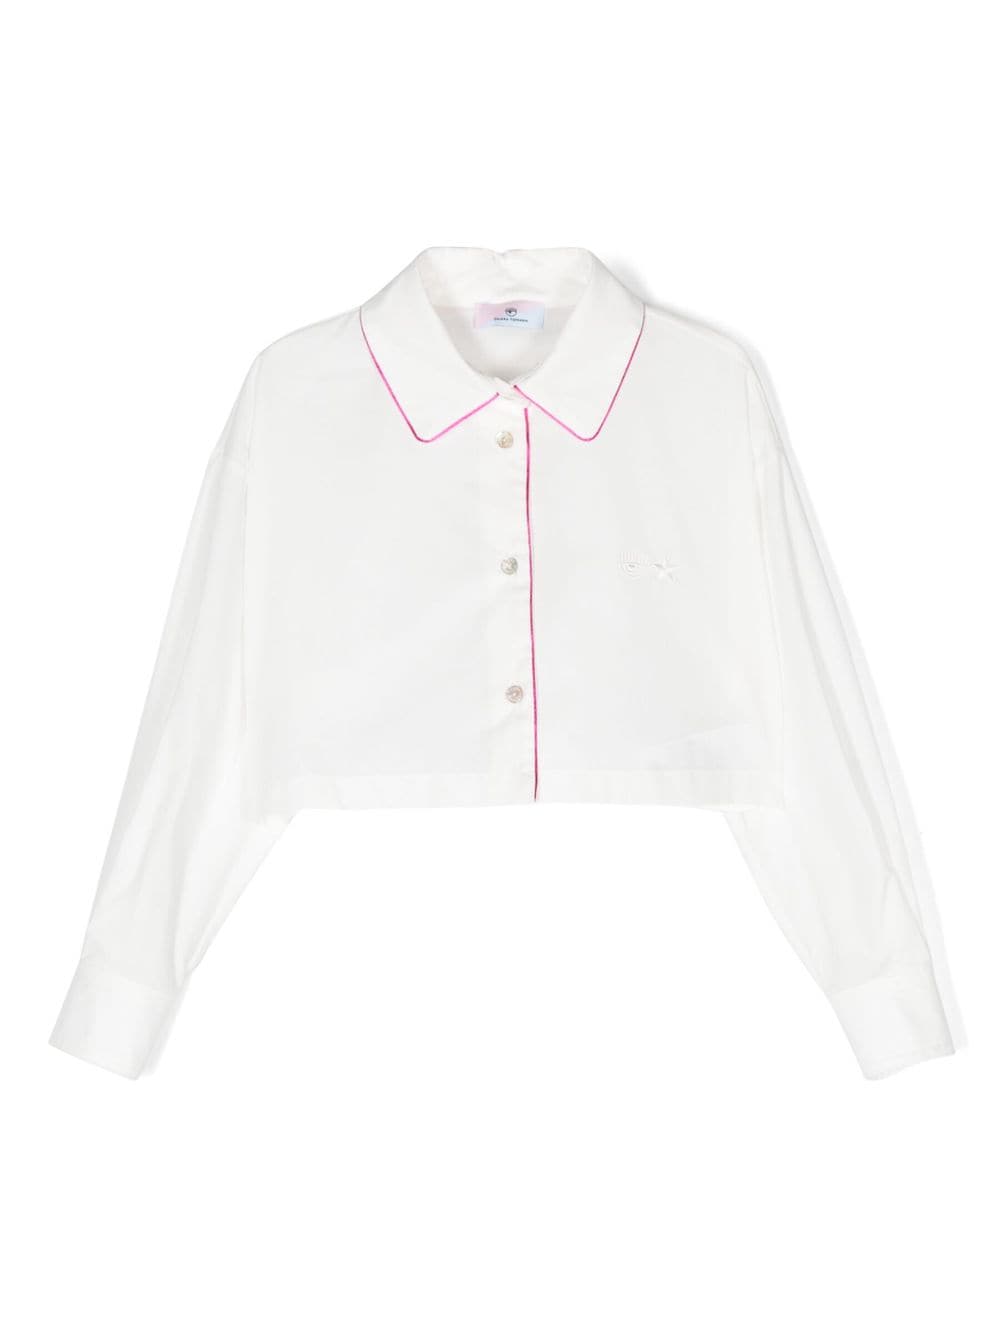 Chemise blanche avec détails roses pour fille